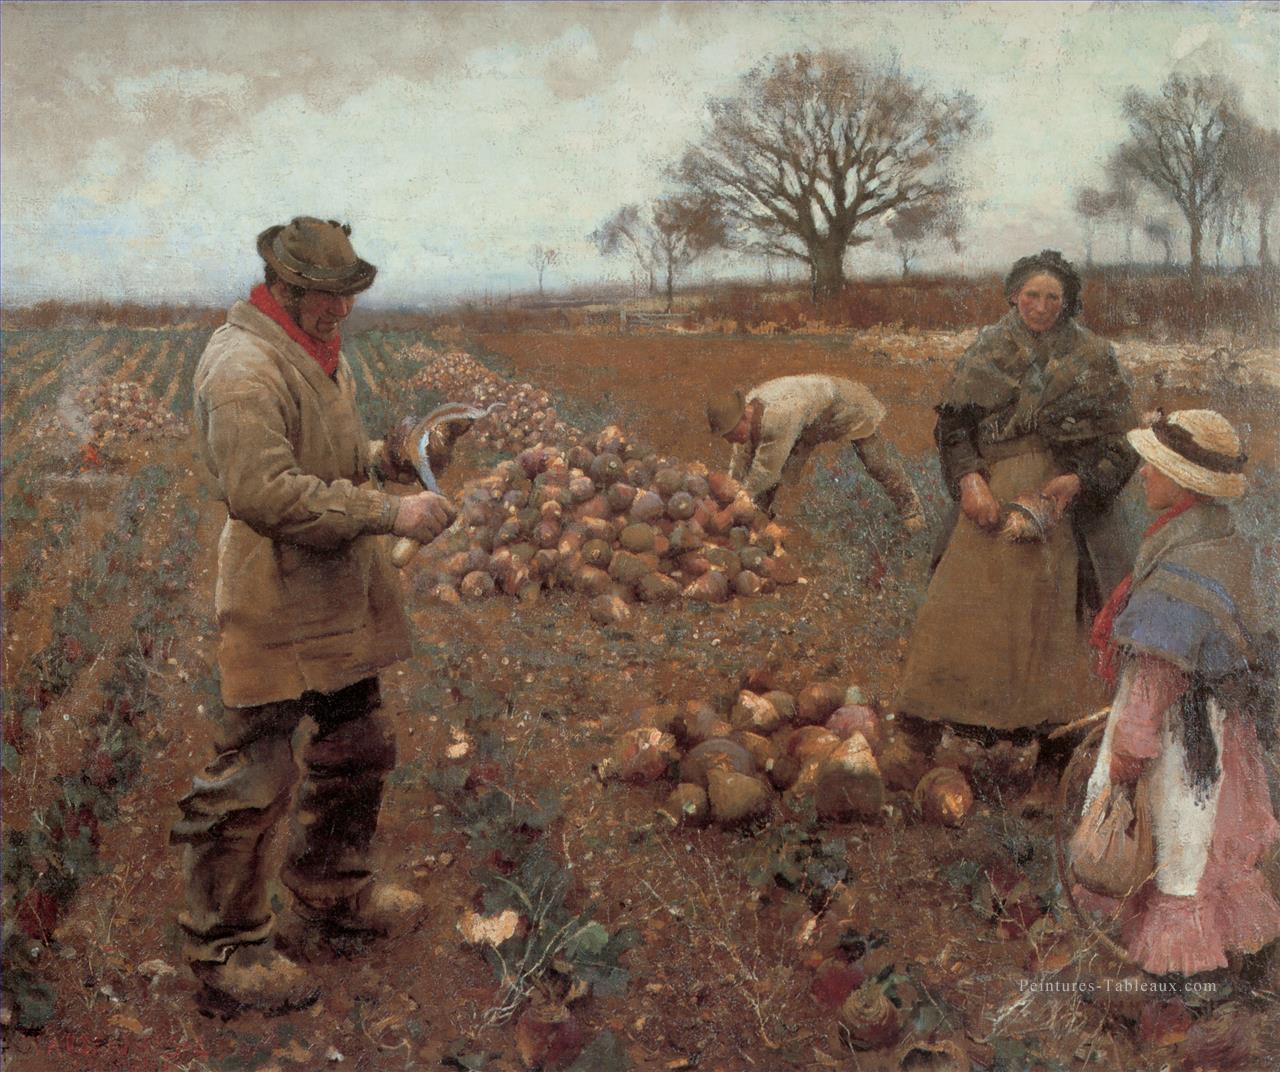 Hiver Travailler les paysans modernes Impressionniste Sir George Clausen Peintures à l'huile